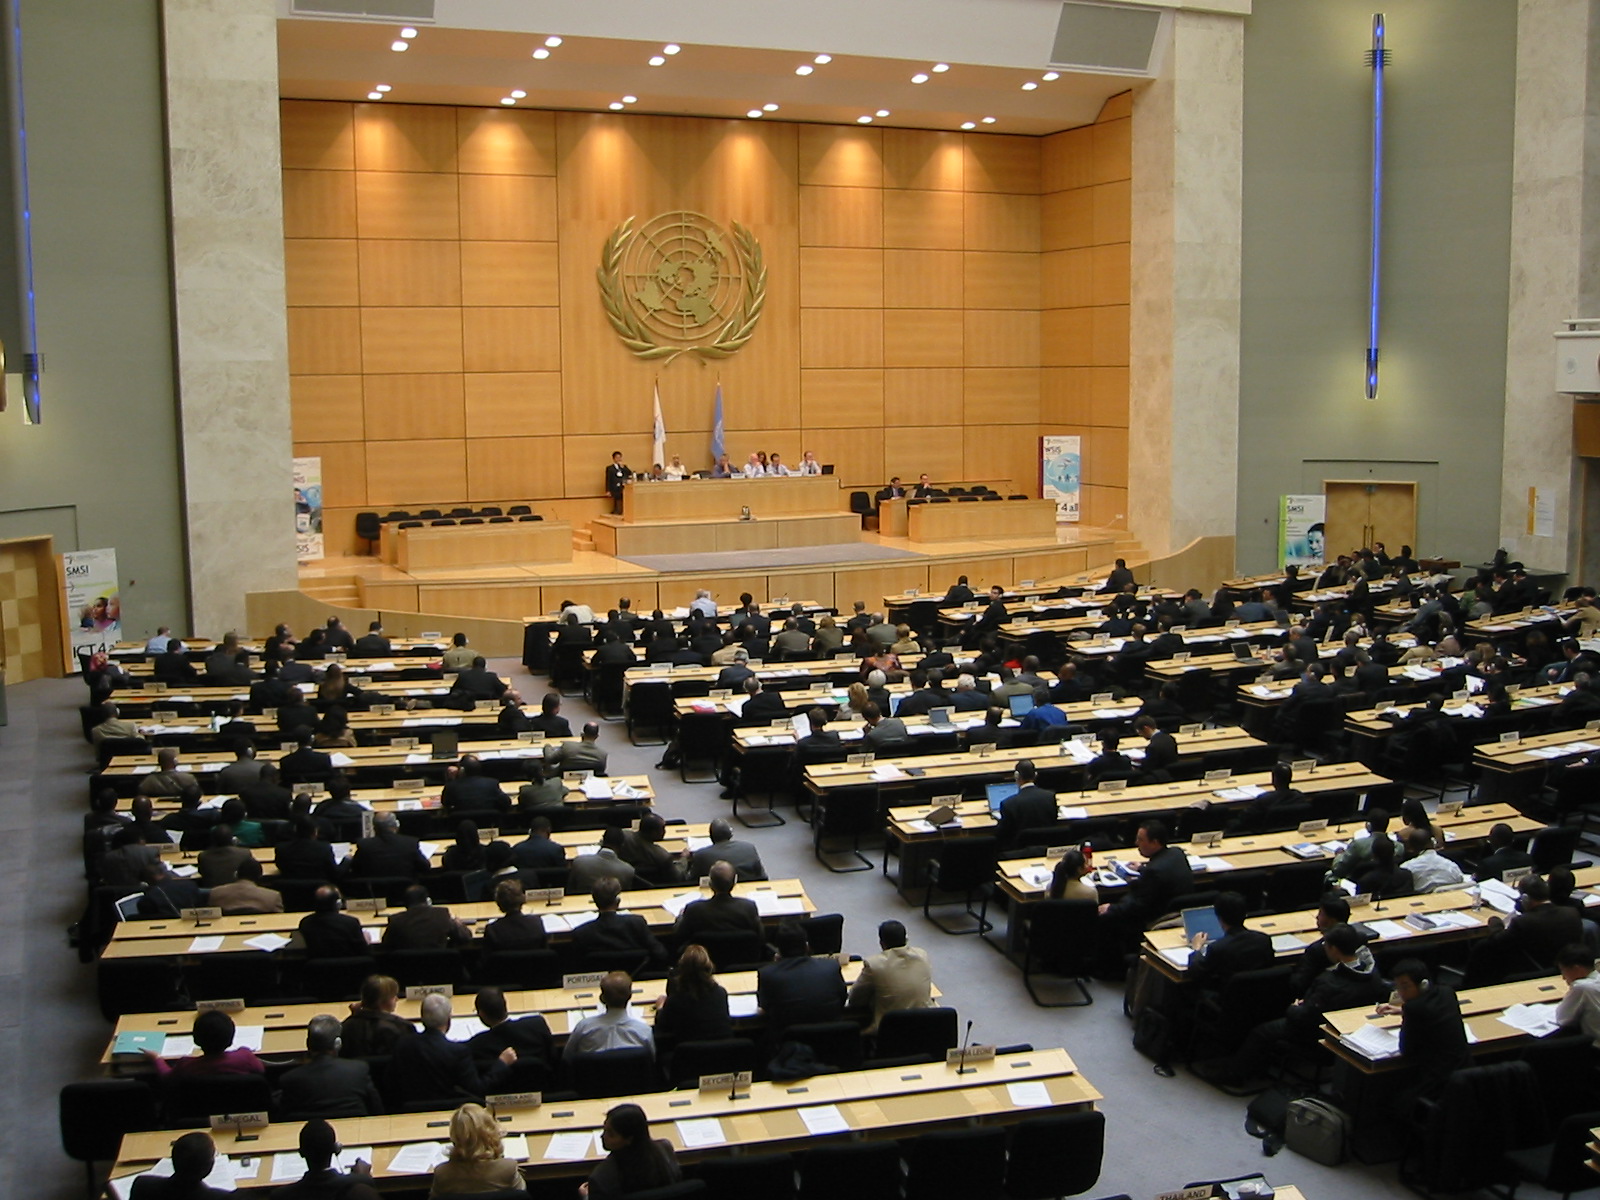 Зал оон. Залы ООН Женева дворец наций. Зал заседаний ООН В Женеве. Отделение организации Объединённых наций в Женеве. Территория ООН В Женеве.